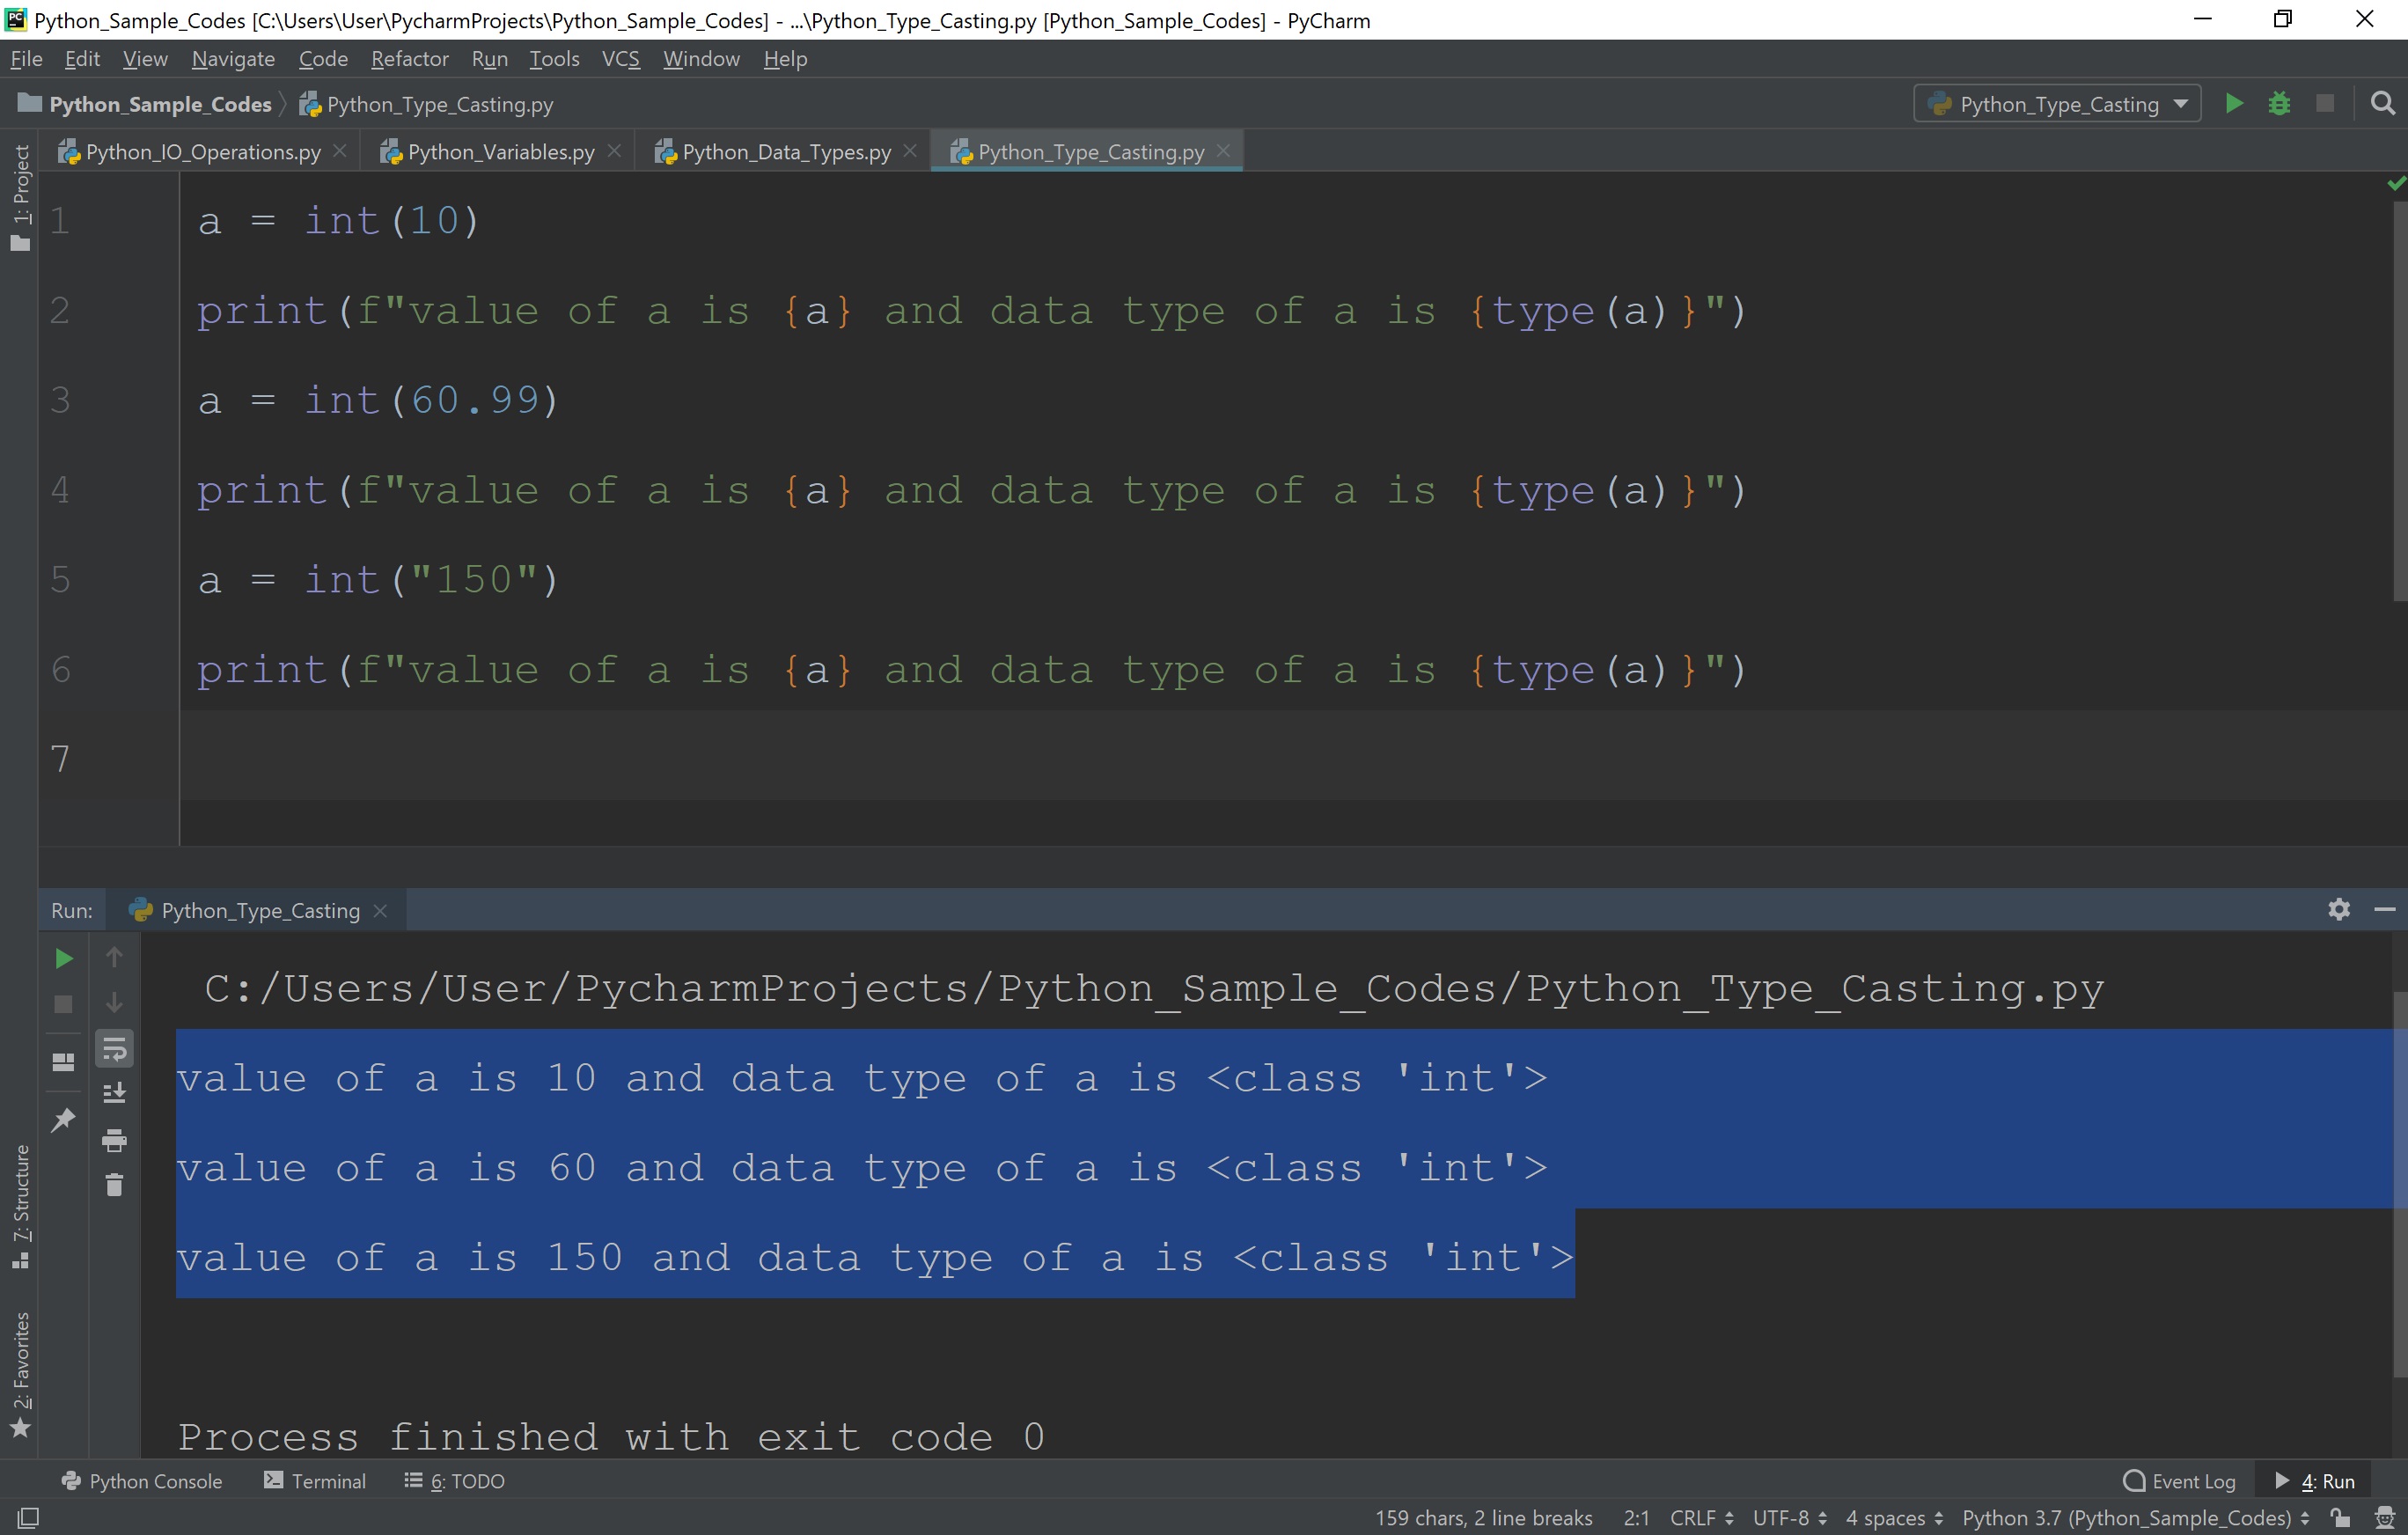 Data types in Python